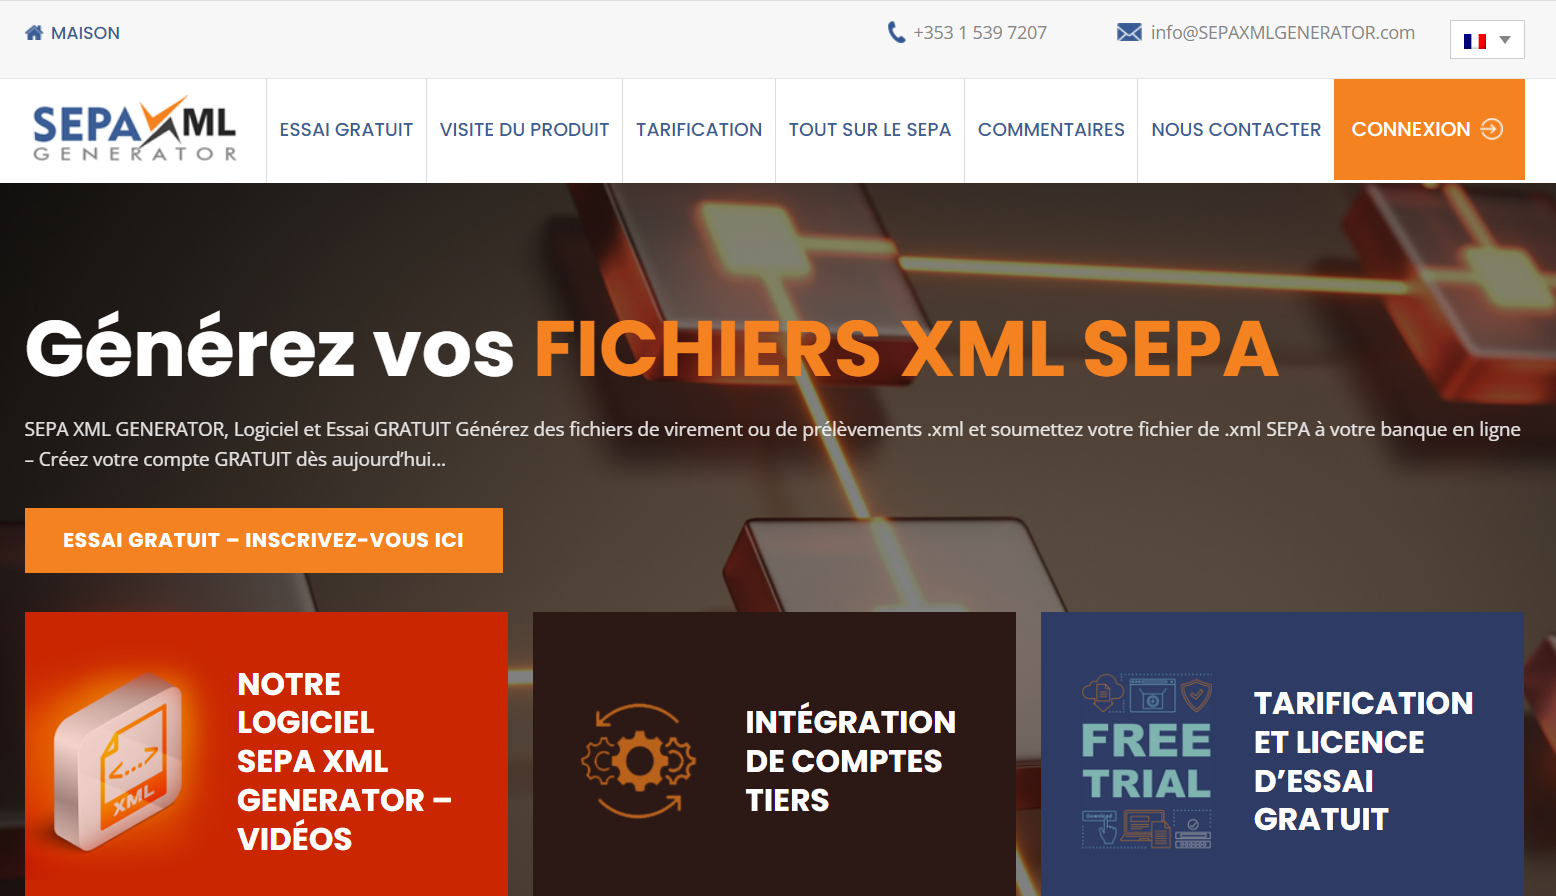 Η ιστοσελίδα SEPA XML GENERATOR είναι τώρα στα γαλλικά